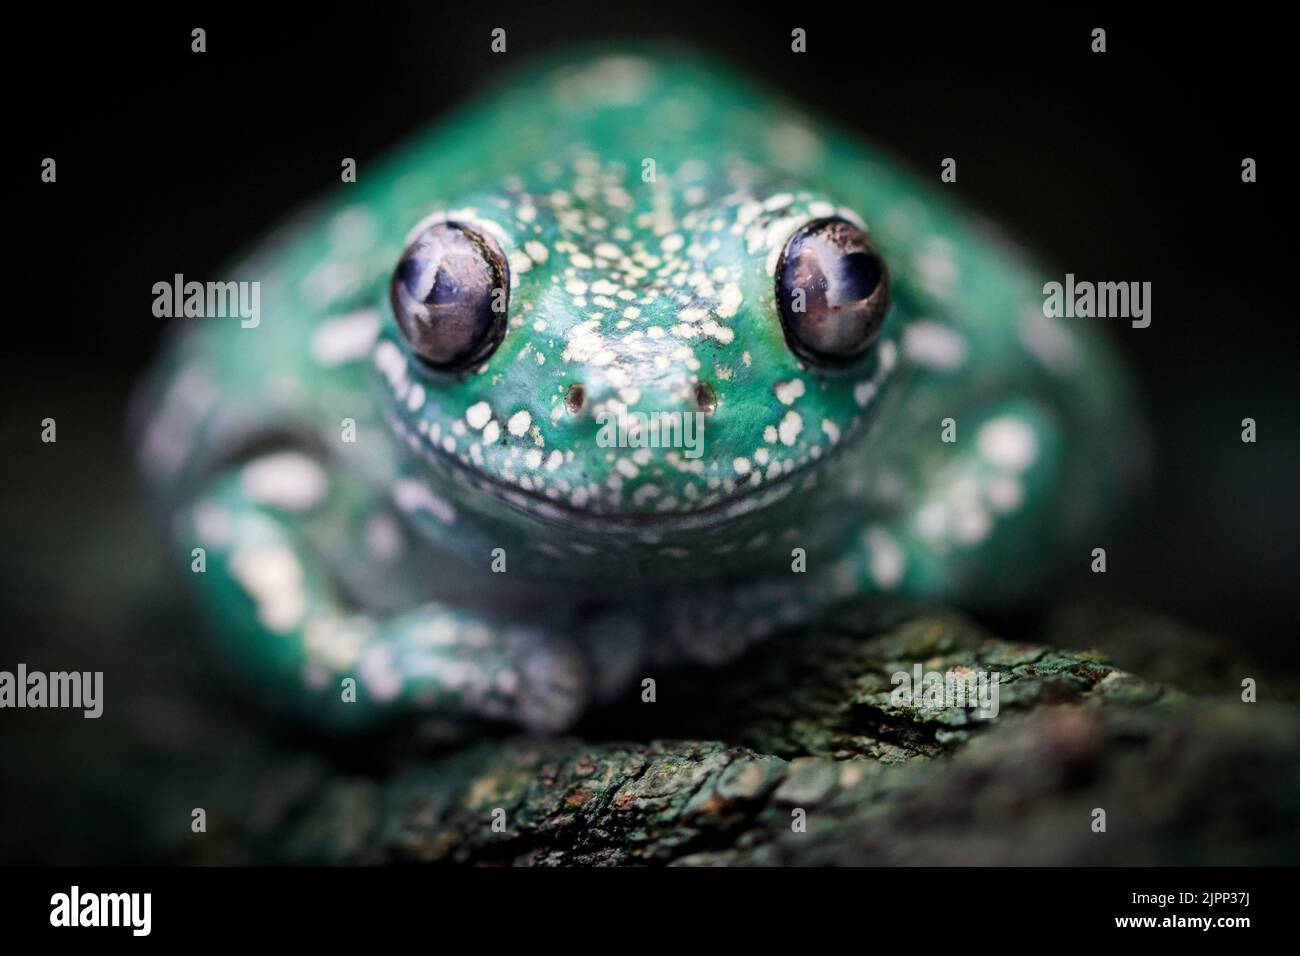 Primo piano di una rana verde con macchie bianche che guardano la fotocamera Foto Stock